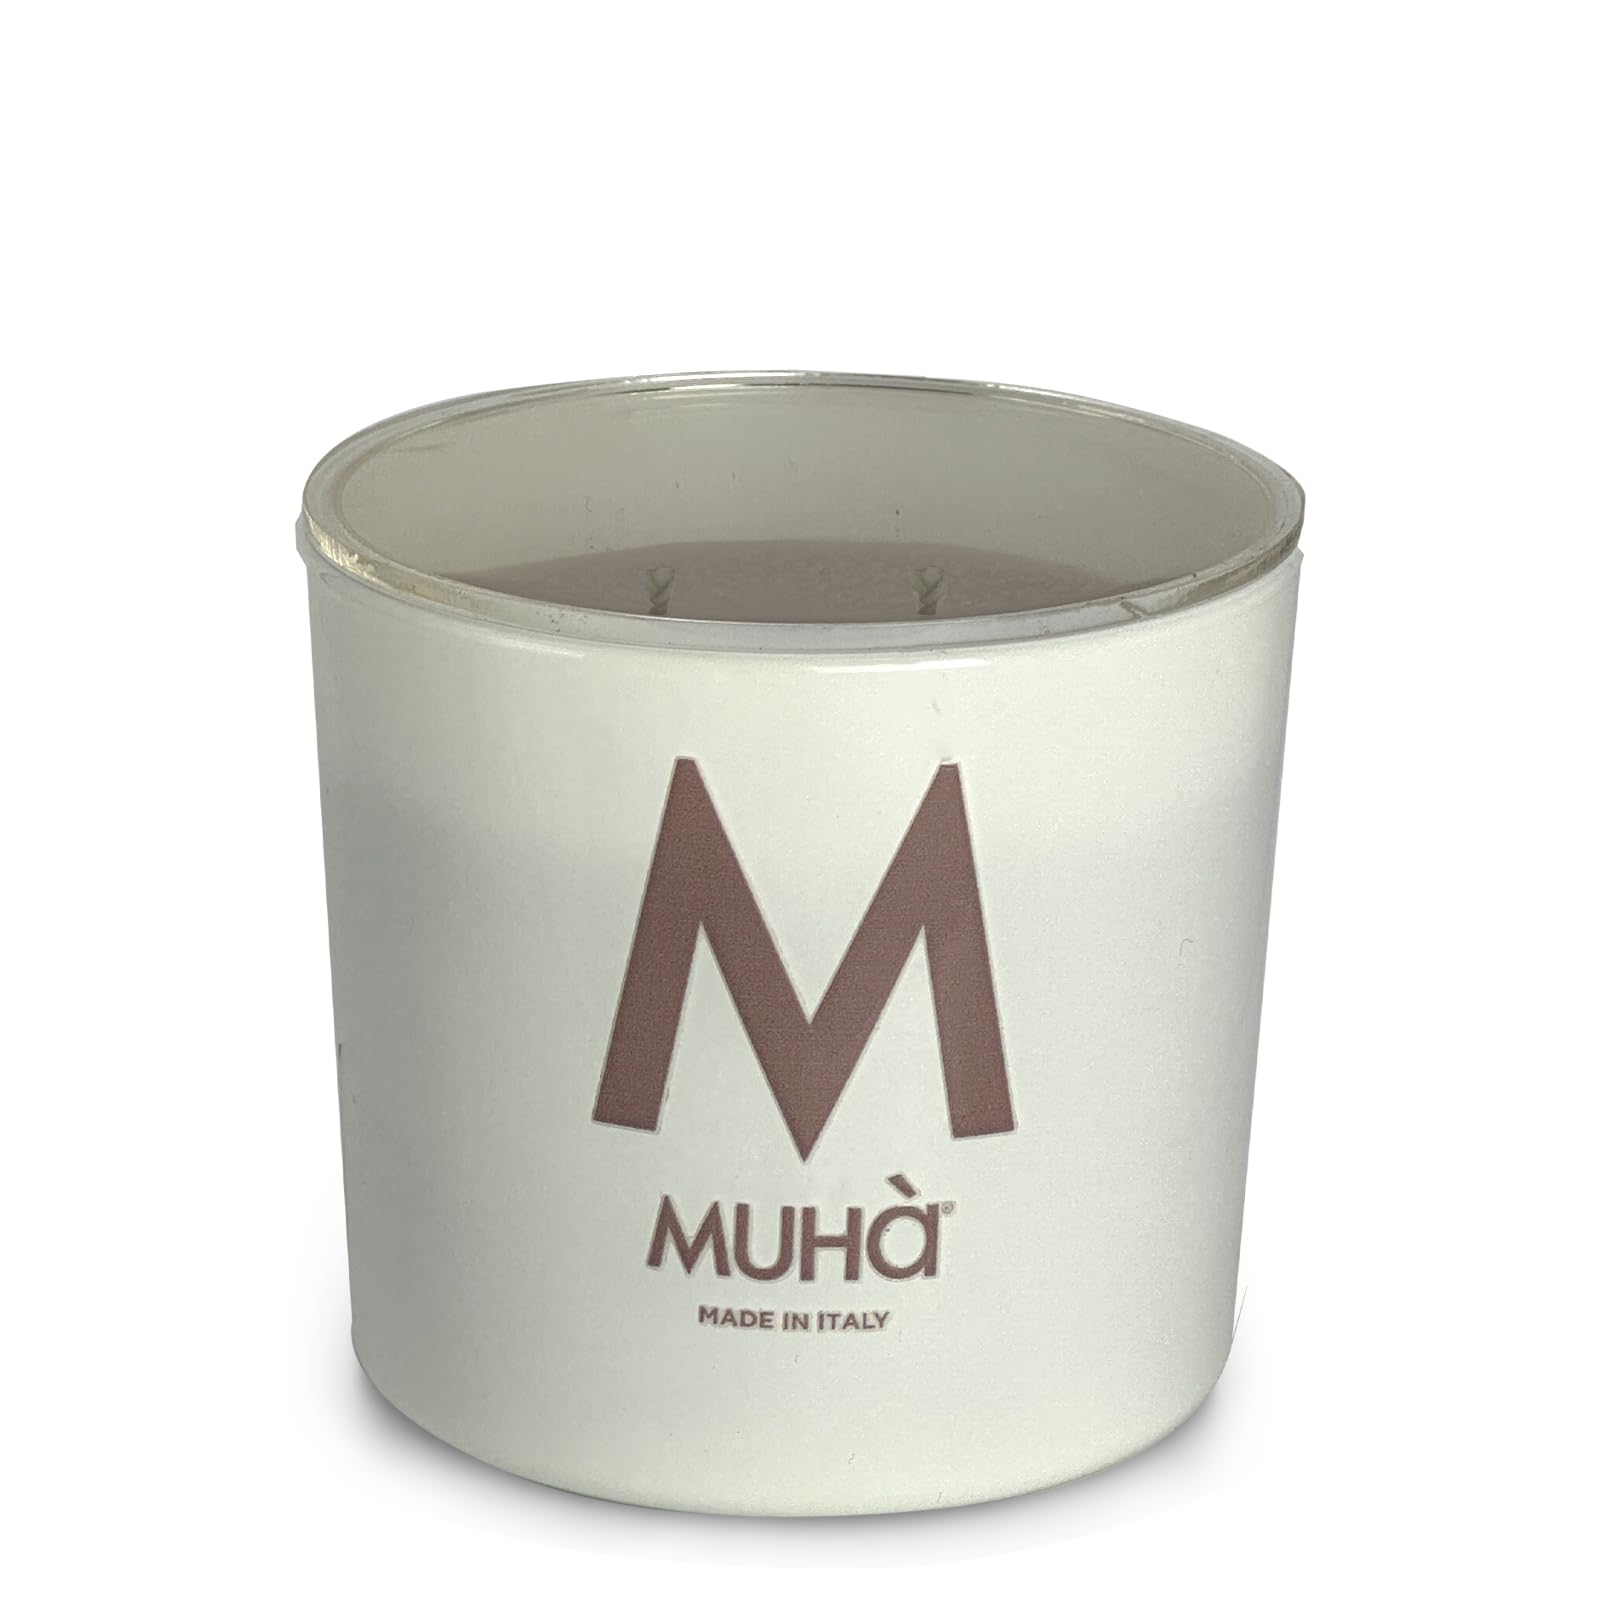 MUHA' | Duftkerze aus weißem Glas, Duft Wasser und Salz, Raumduft, Format 270 g